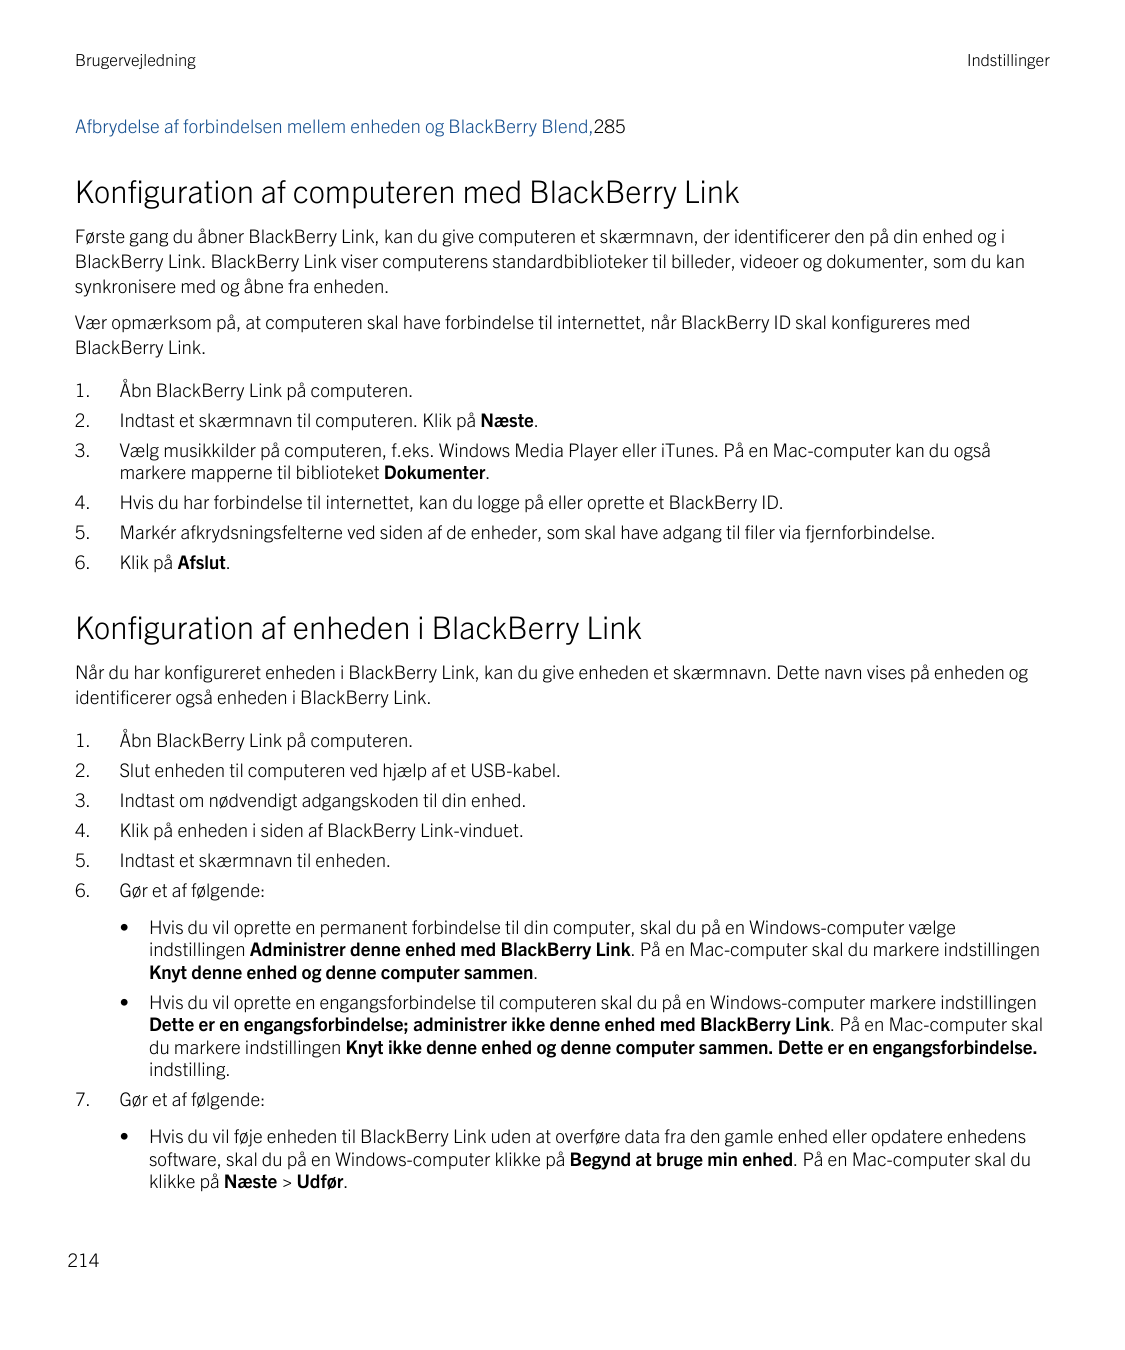 BrugervejledningIndstillingerAfbrydelse af forbindelsen mellem enheden og BlackBerry Blend,285Konfiguration af computeren med Bl